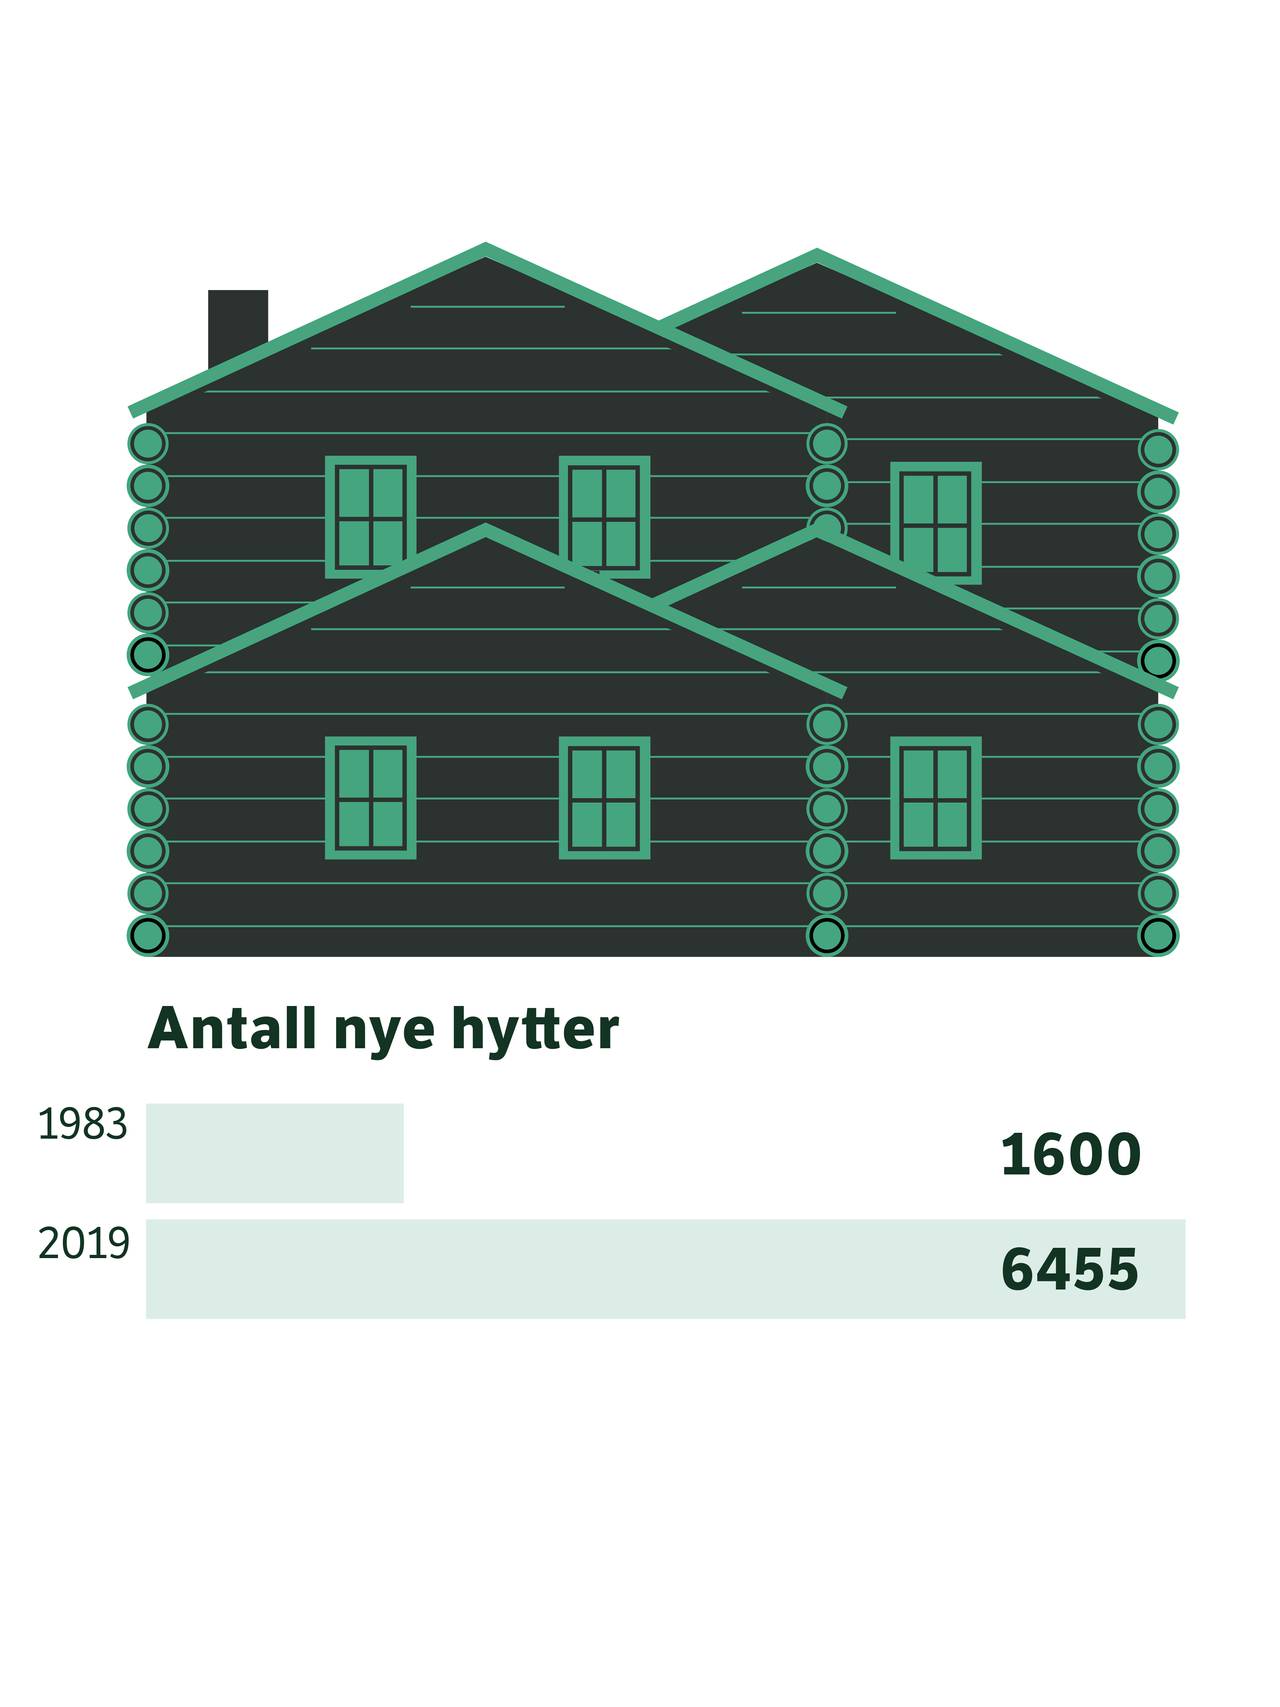 Antall nye hytter har firedoblet seg siden 1983.